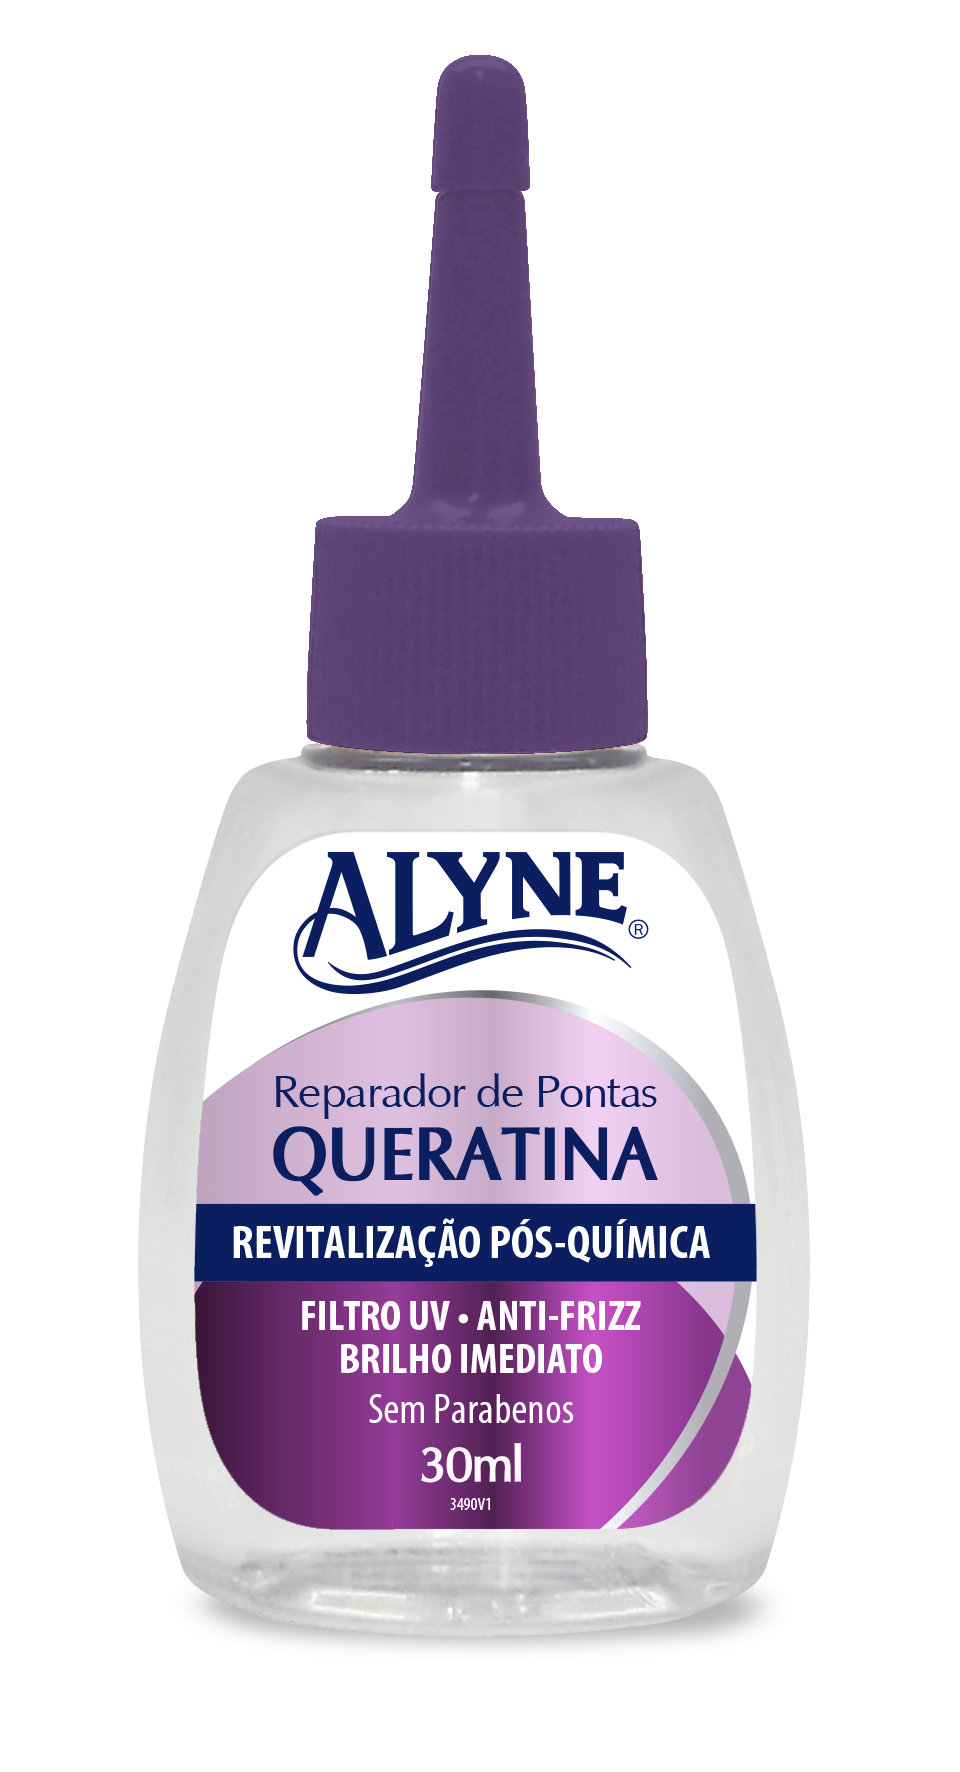 Reparador de Pontas Alyne Queratina 30ml